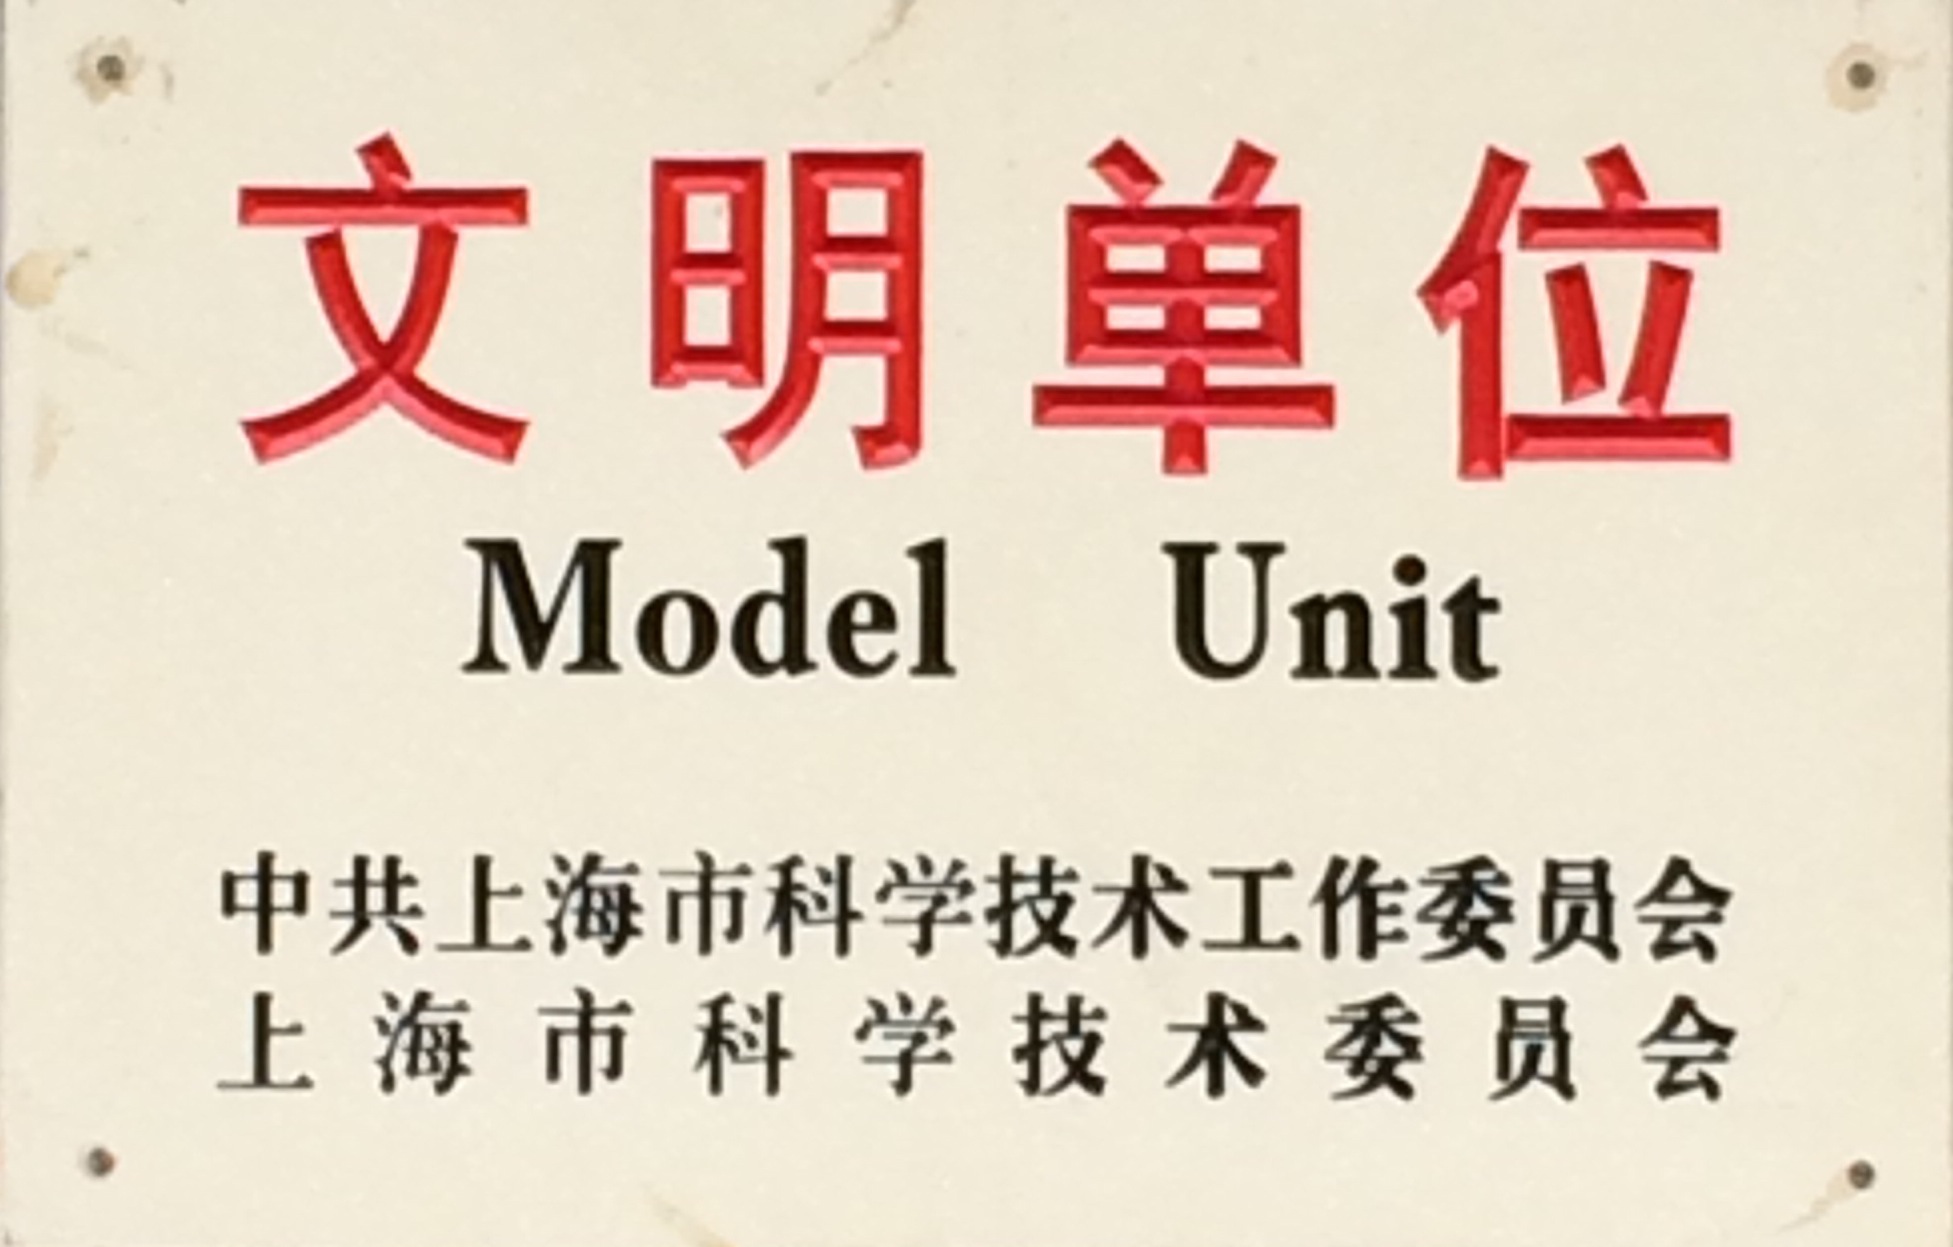  上海市科技系統文明單位